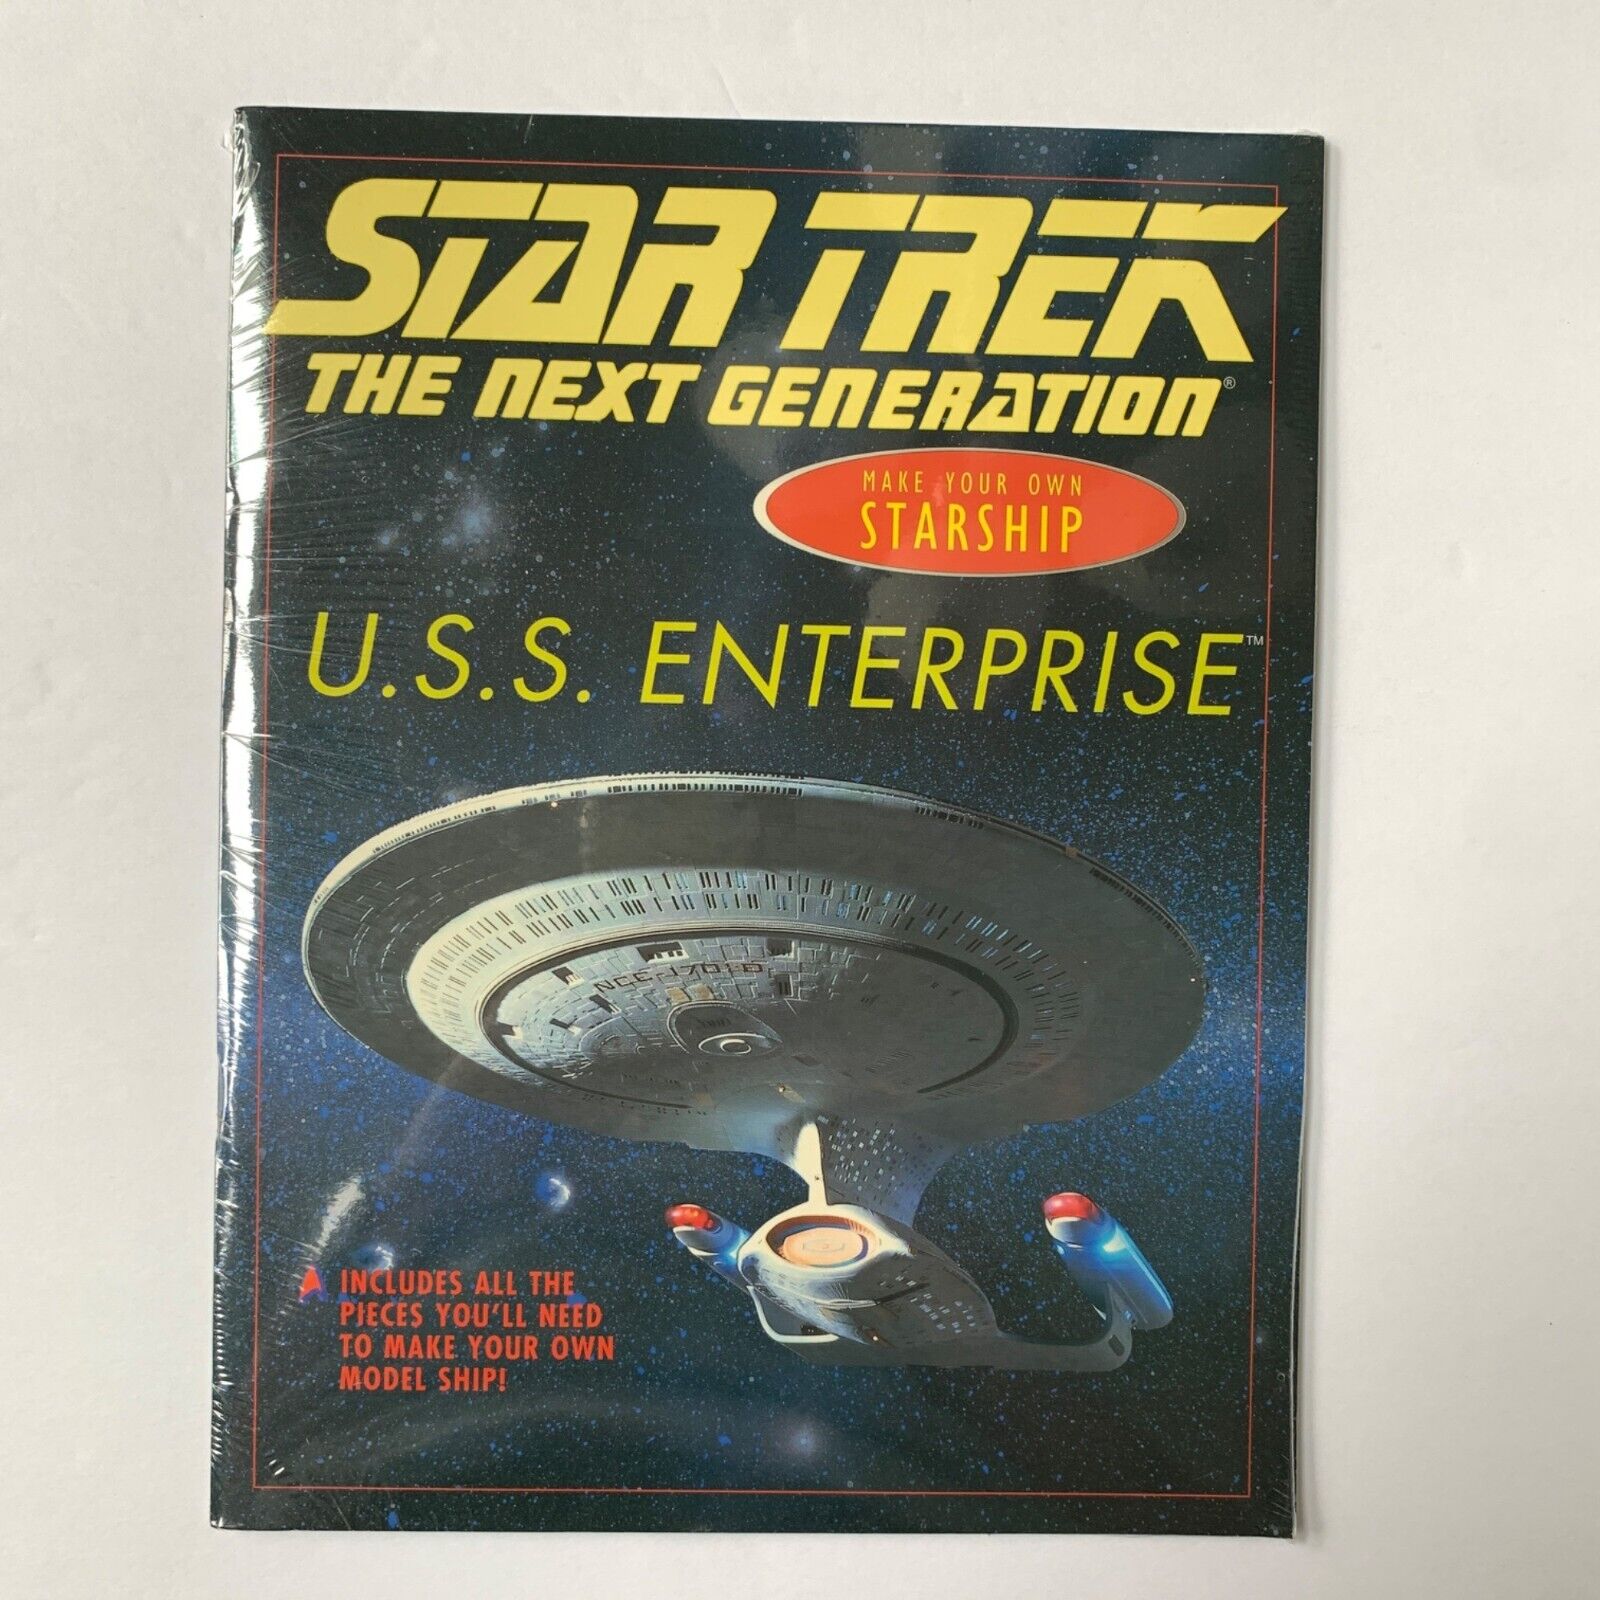 Star Trek U.S.S. Enterprise Make Your Own Starship NEW Sealed